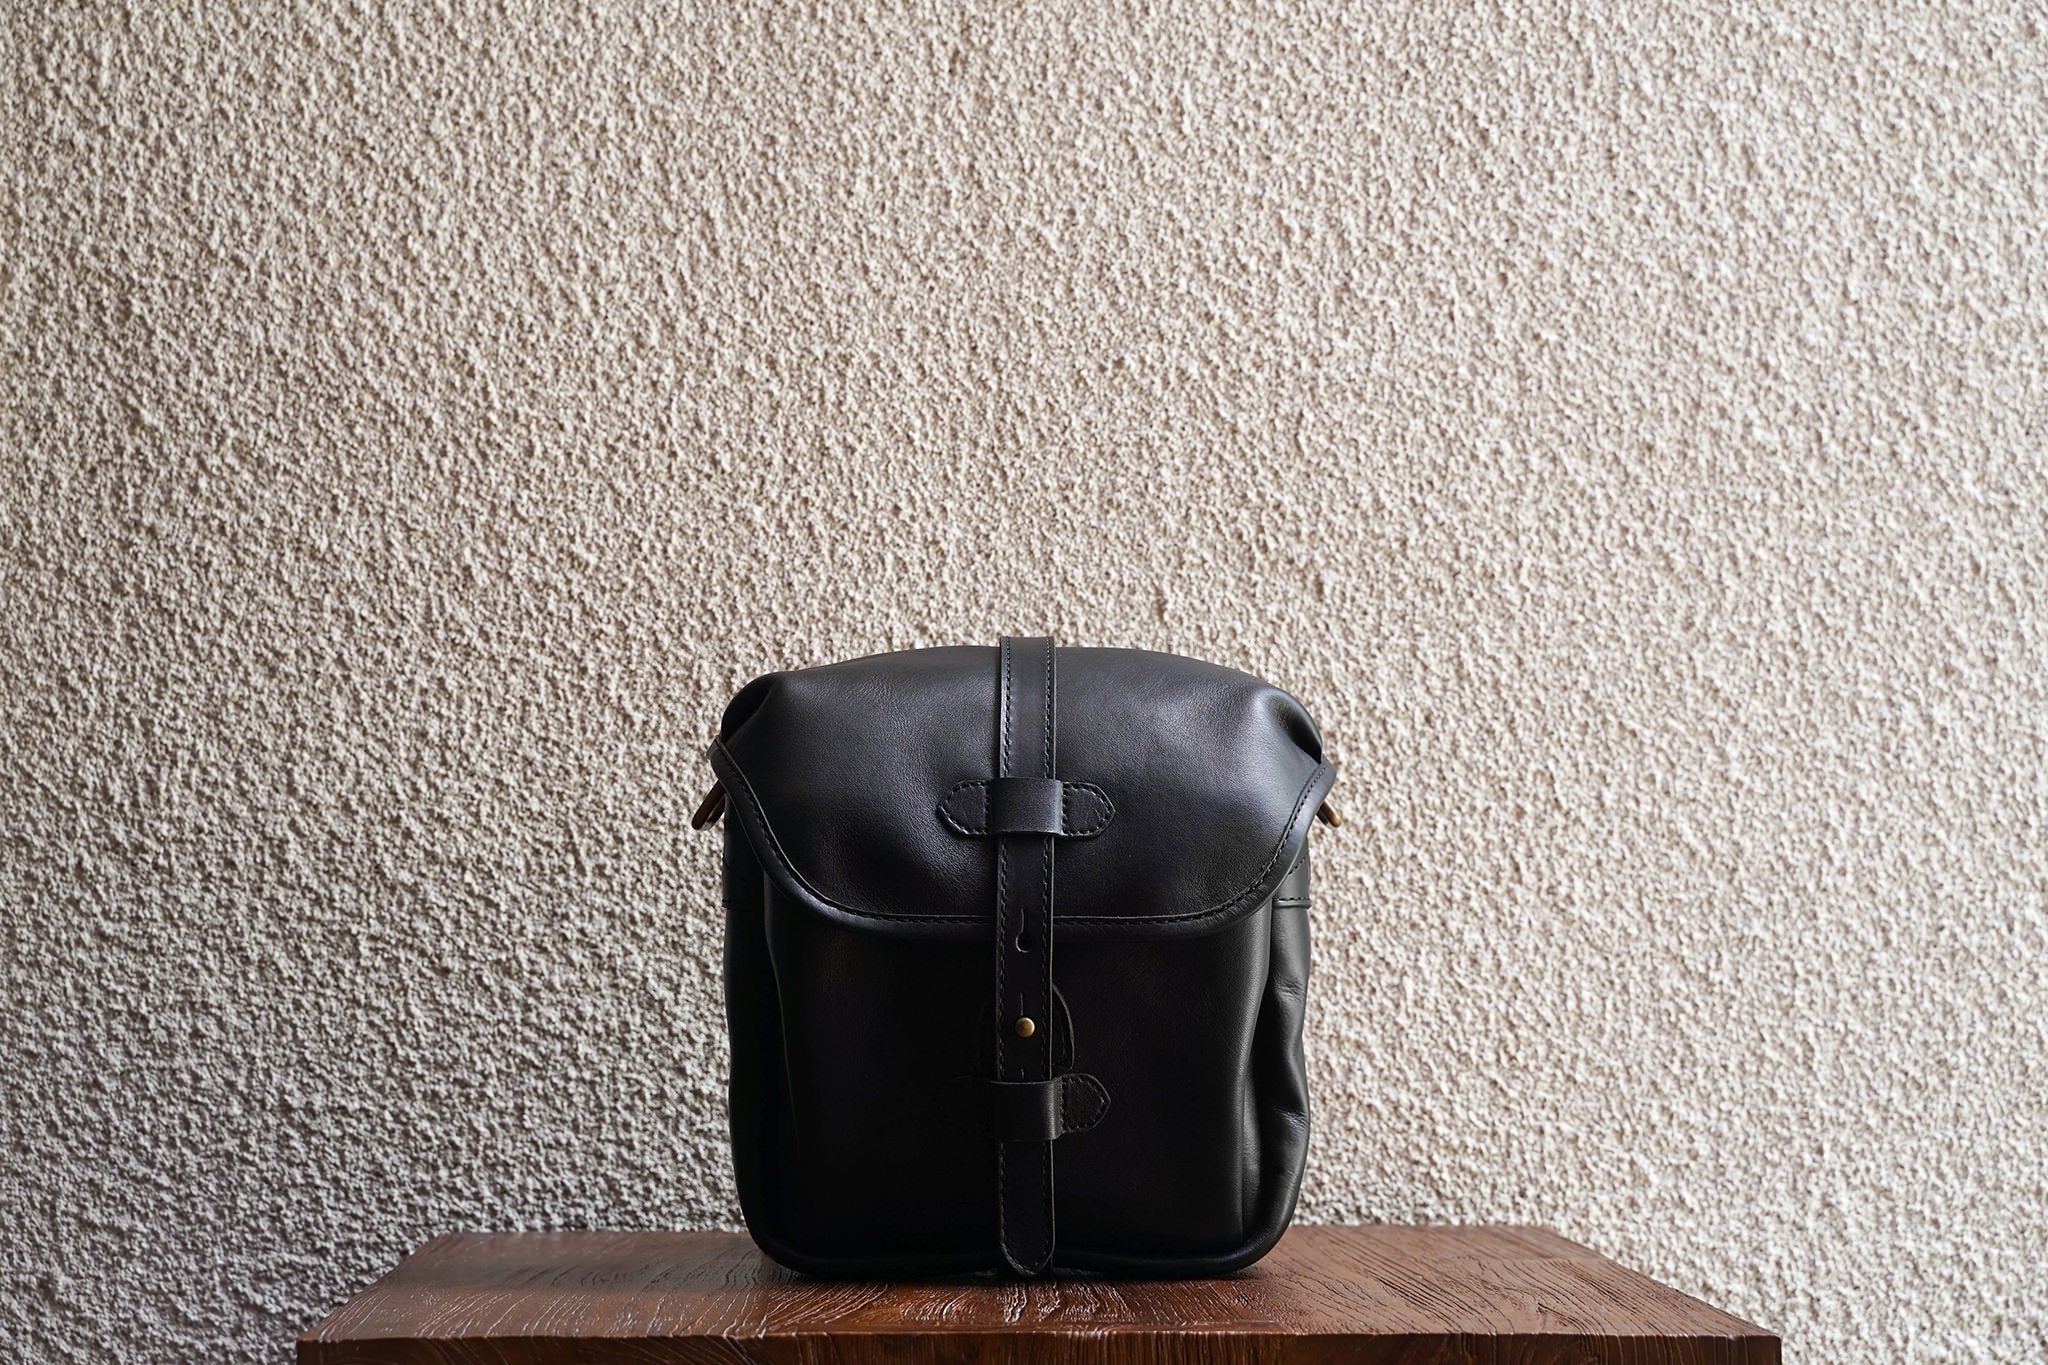 F.C. 7 Leather Messenger Bag | Field Bag | Black | Cravar